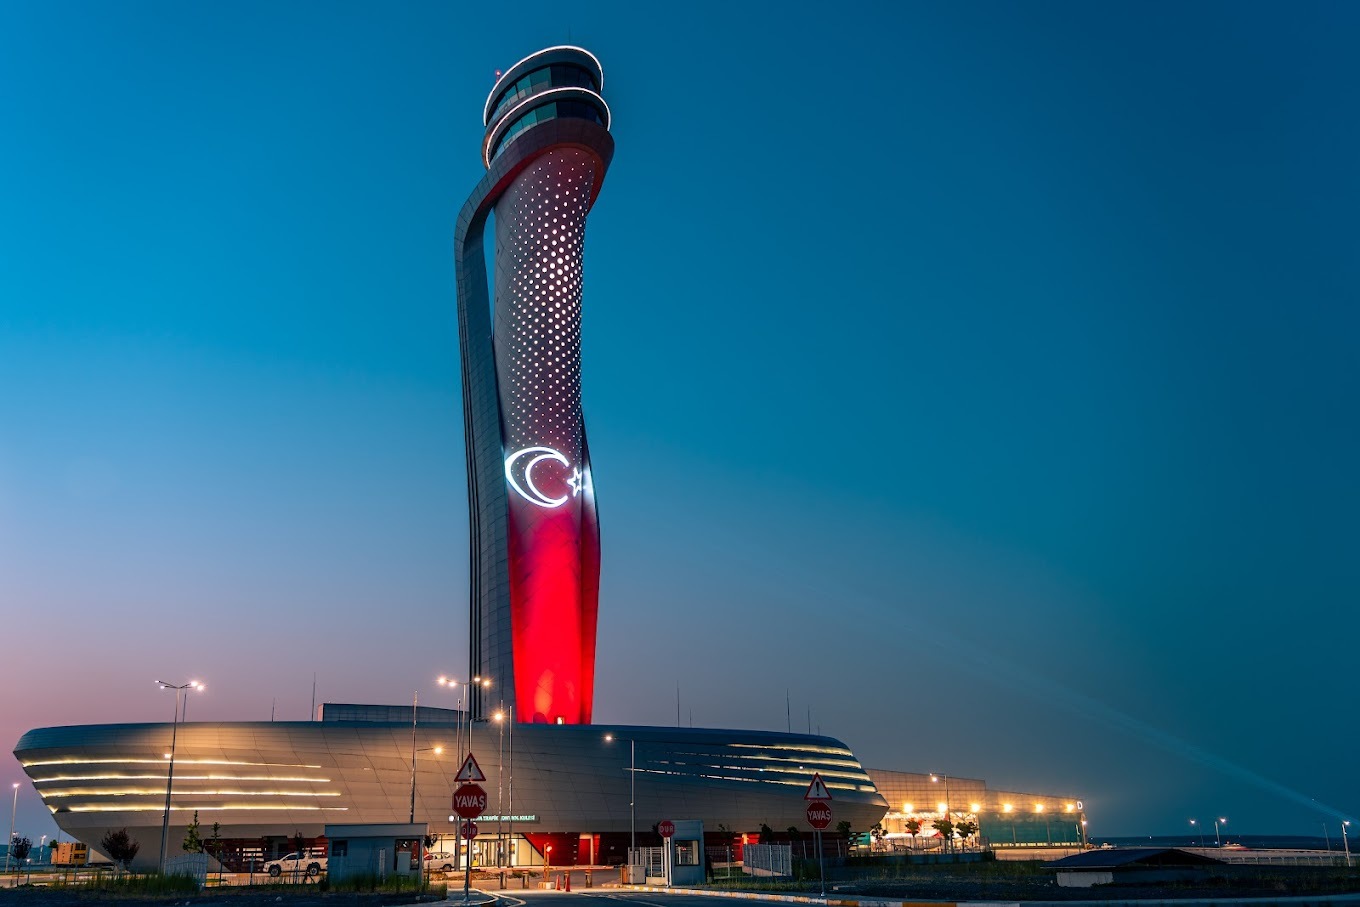 فرودگاه استانبول برای سومین سال متوالی «فرودگاه سال اروپا» شد